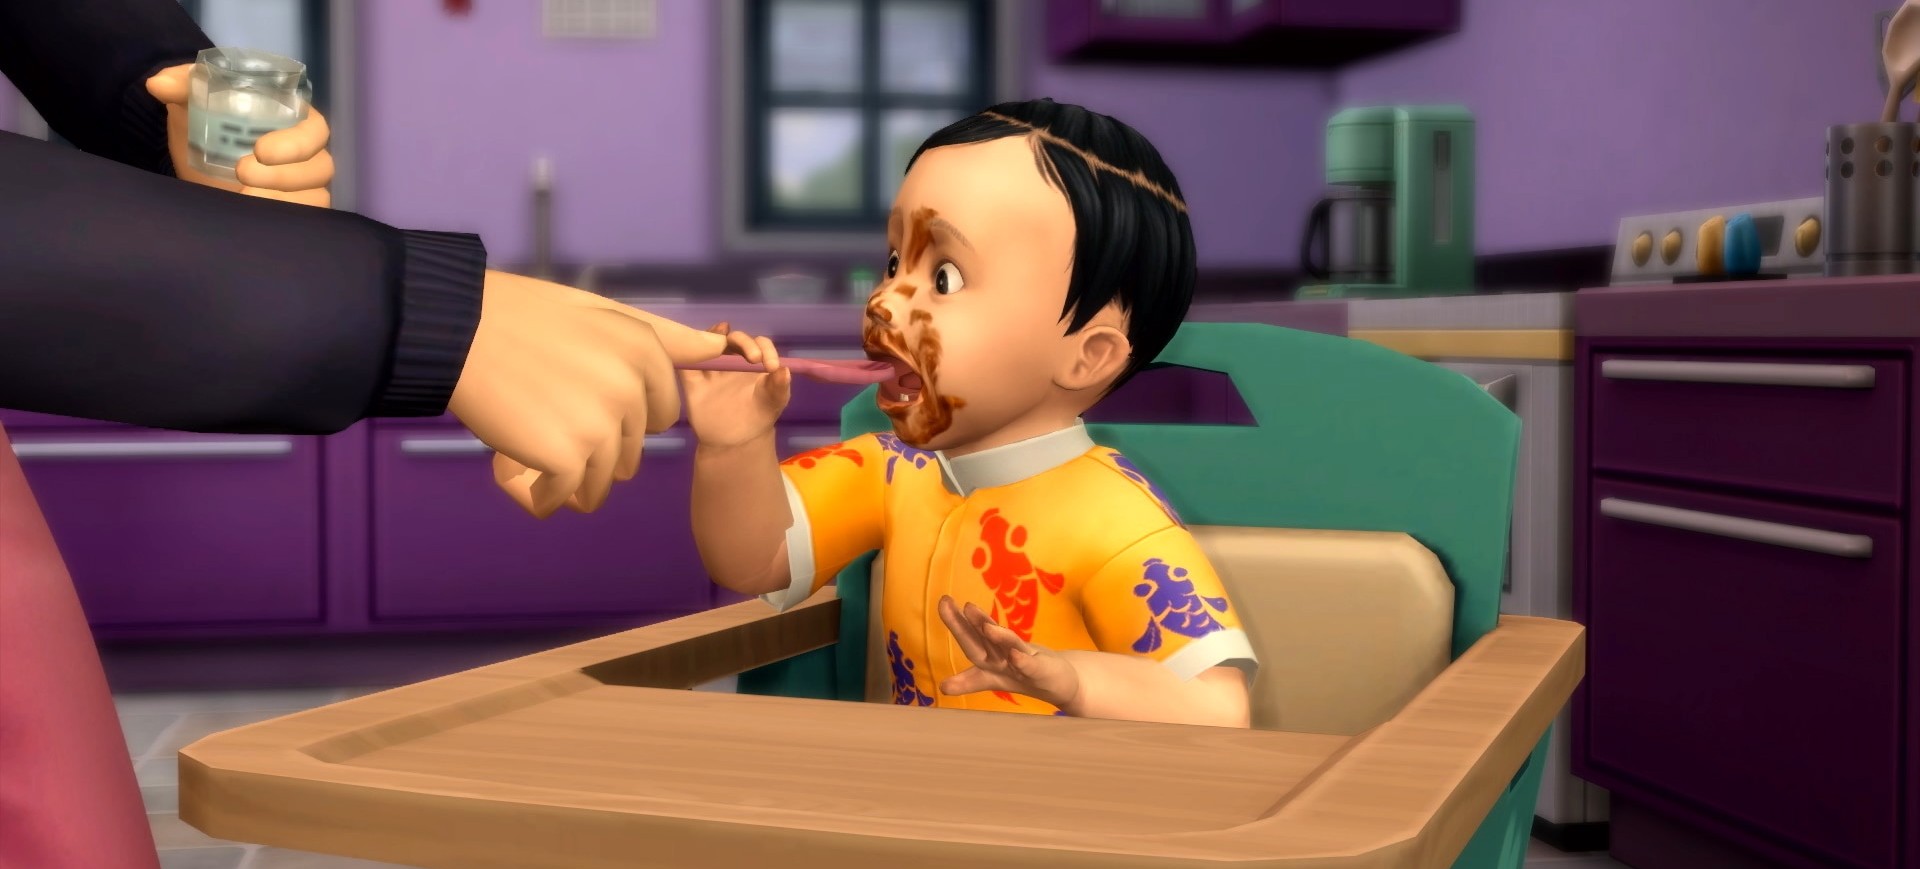 ilustração de um bebê sentado na cadeirinha de comer, com uma mão dando comida para ele e o rosto todo sujo; cena da expansão A Aventura de Crescer, do jogo The Sims 4